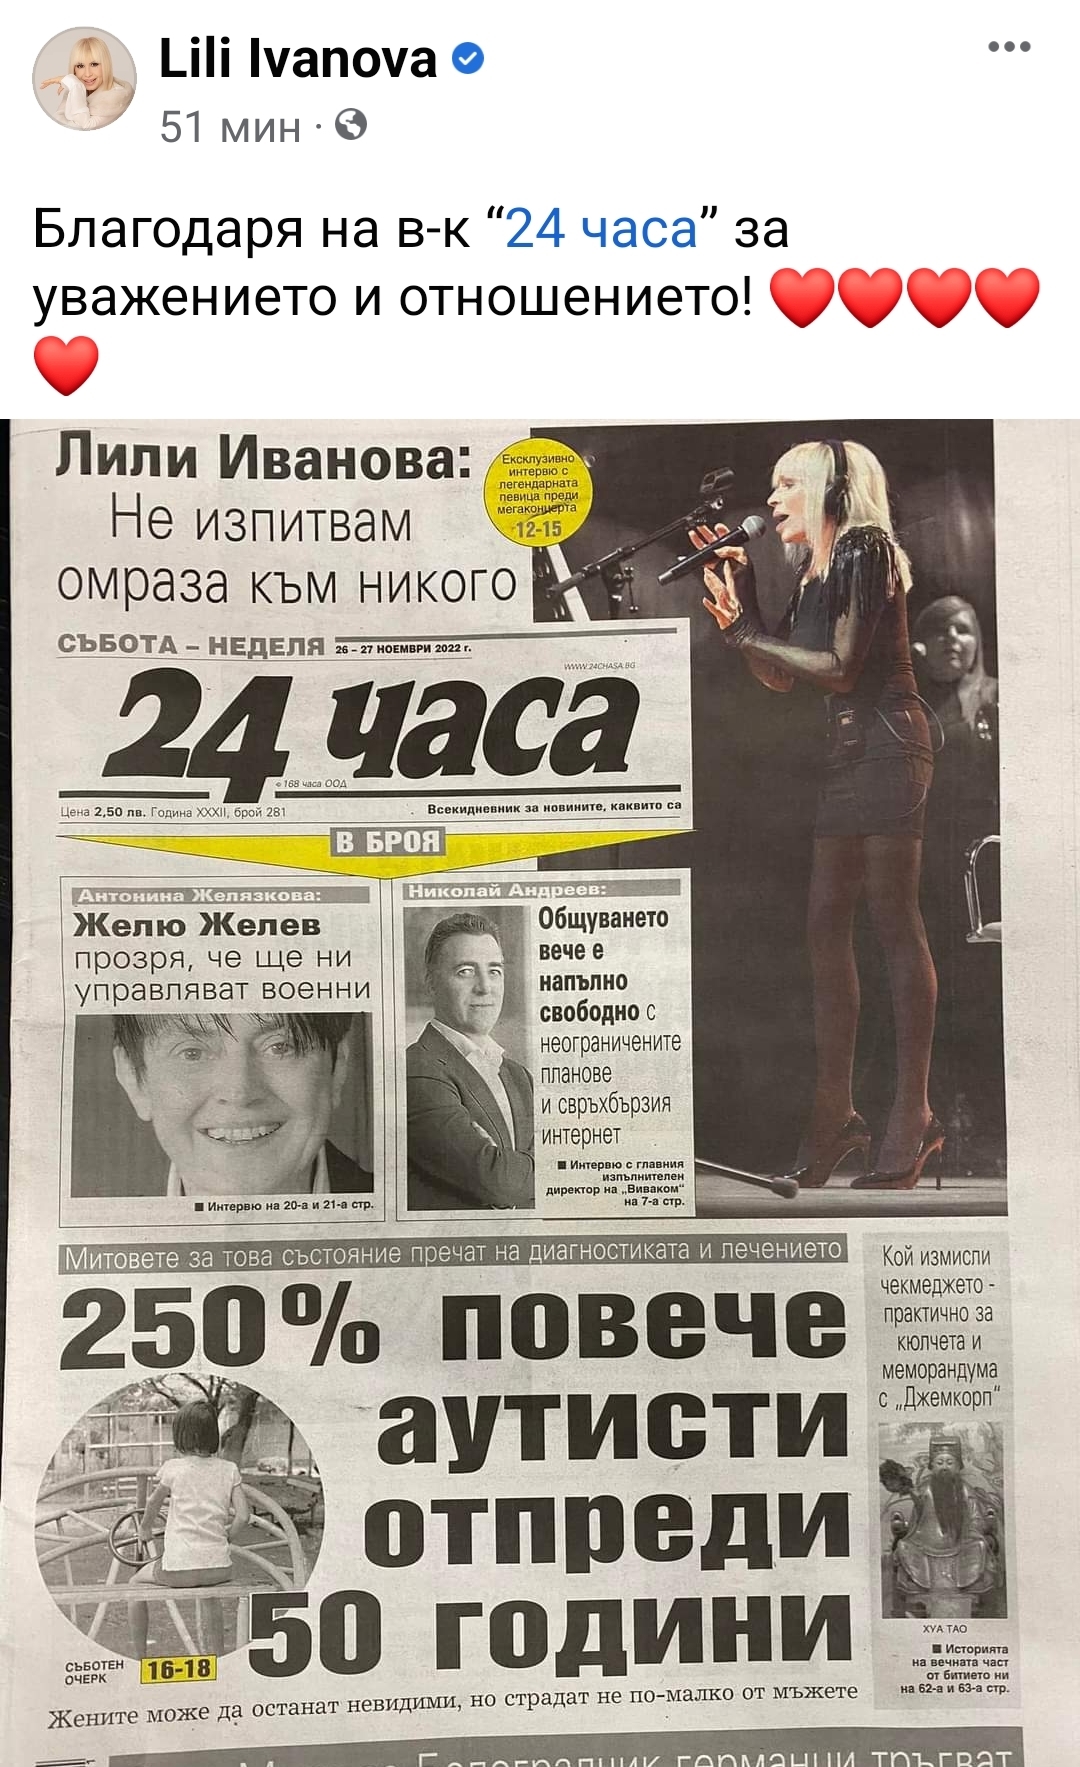 Лили Иванова пусна първа страница на "24 часа" в профила си във фейсбук